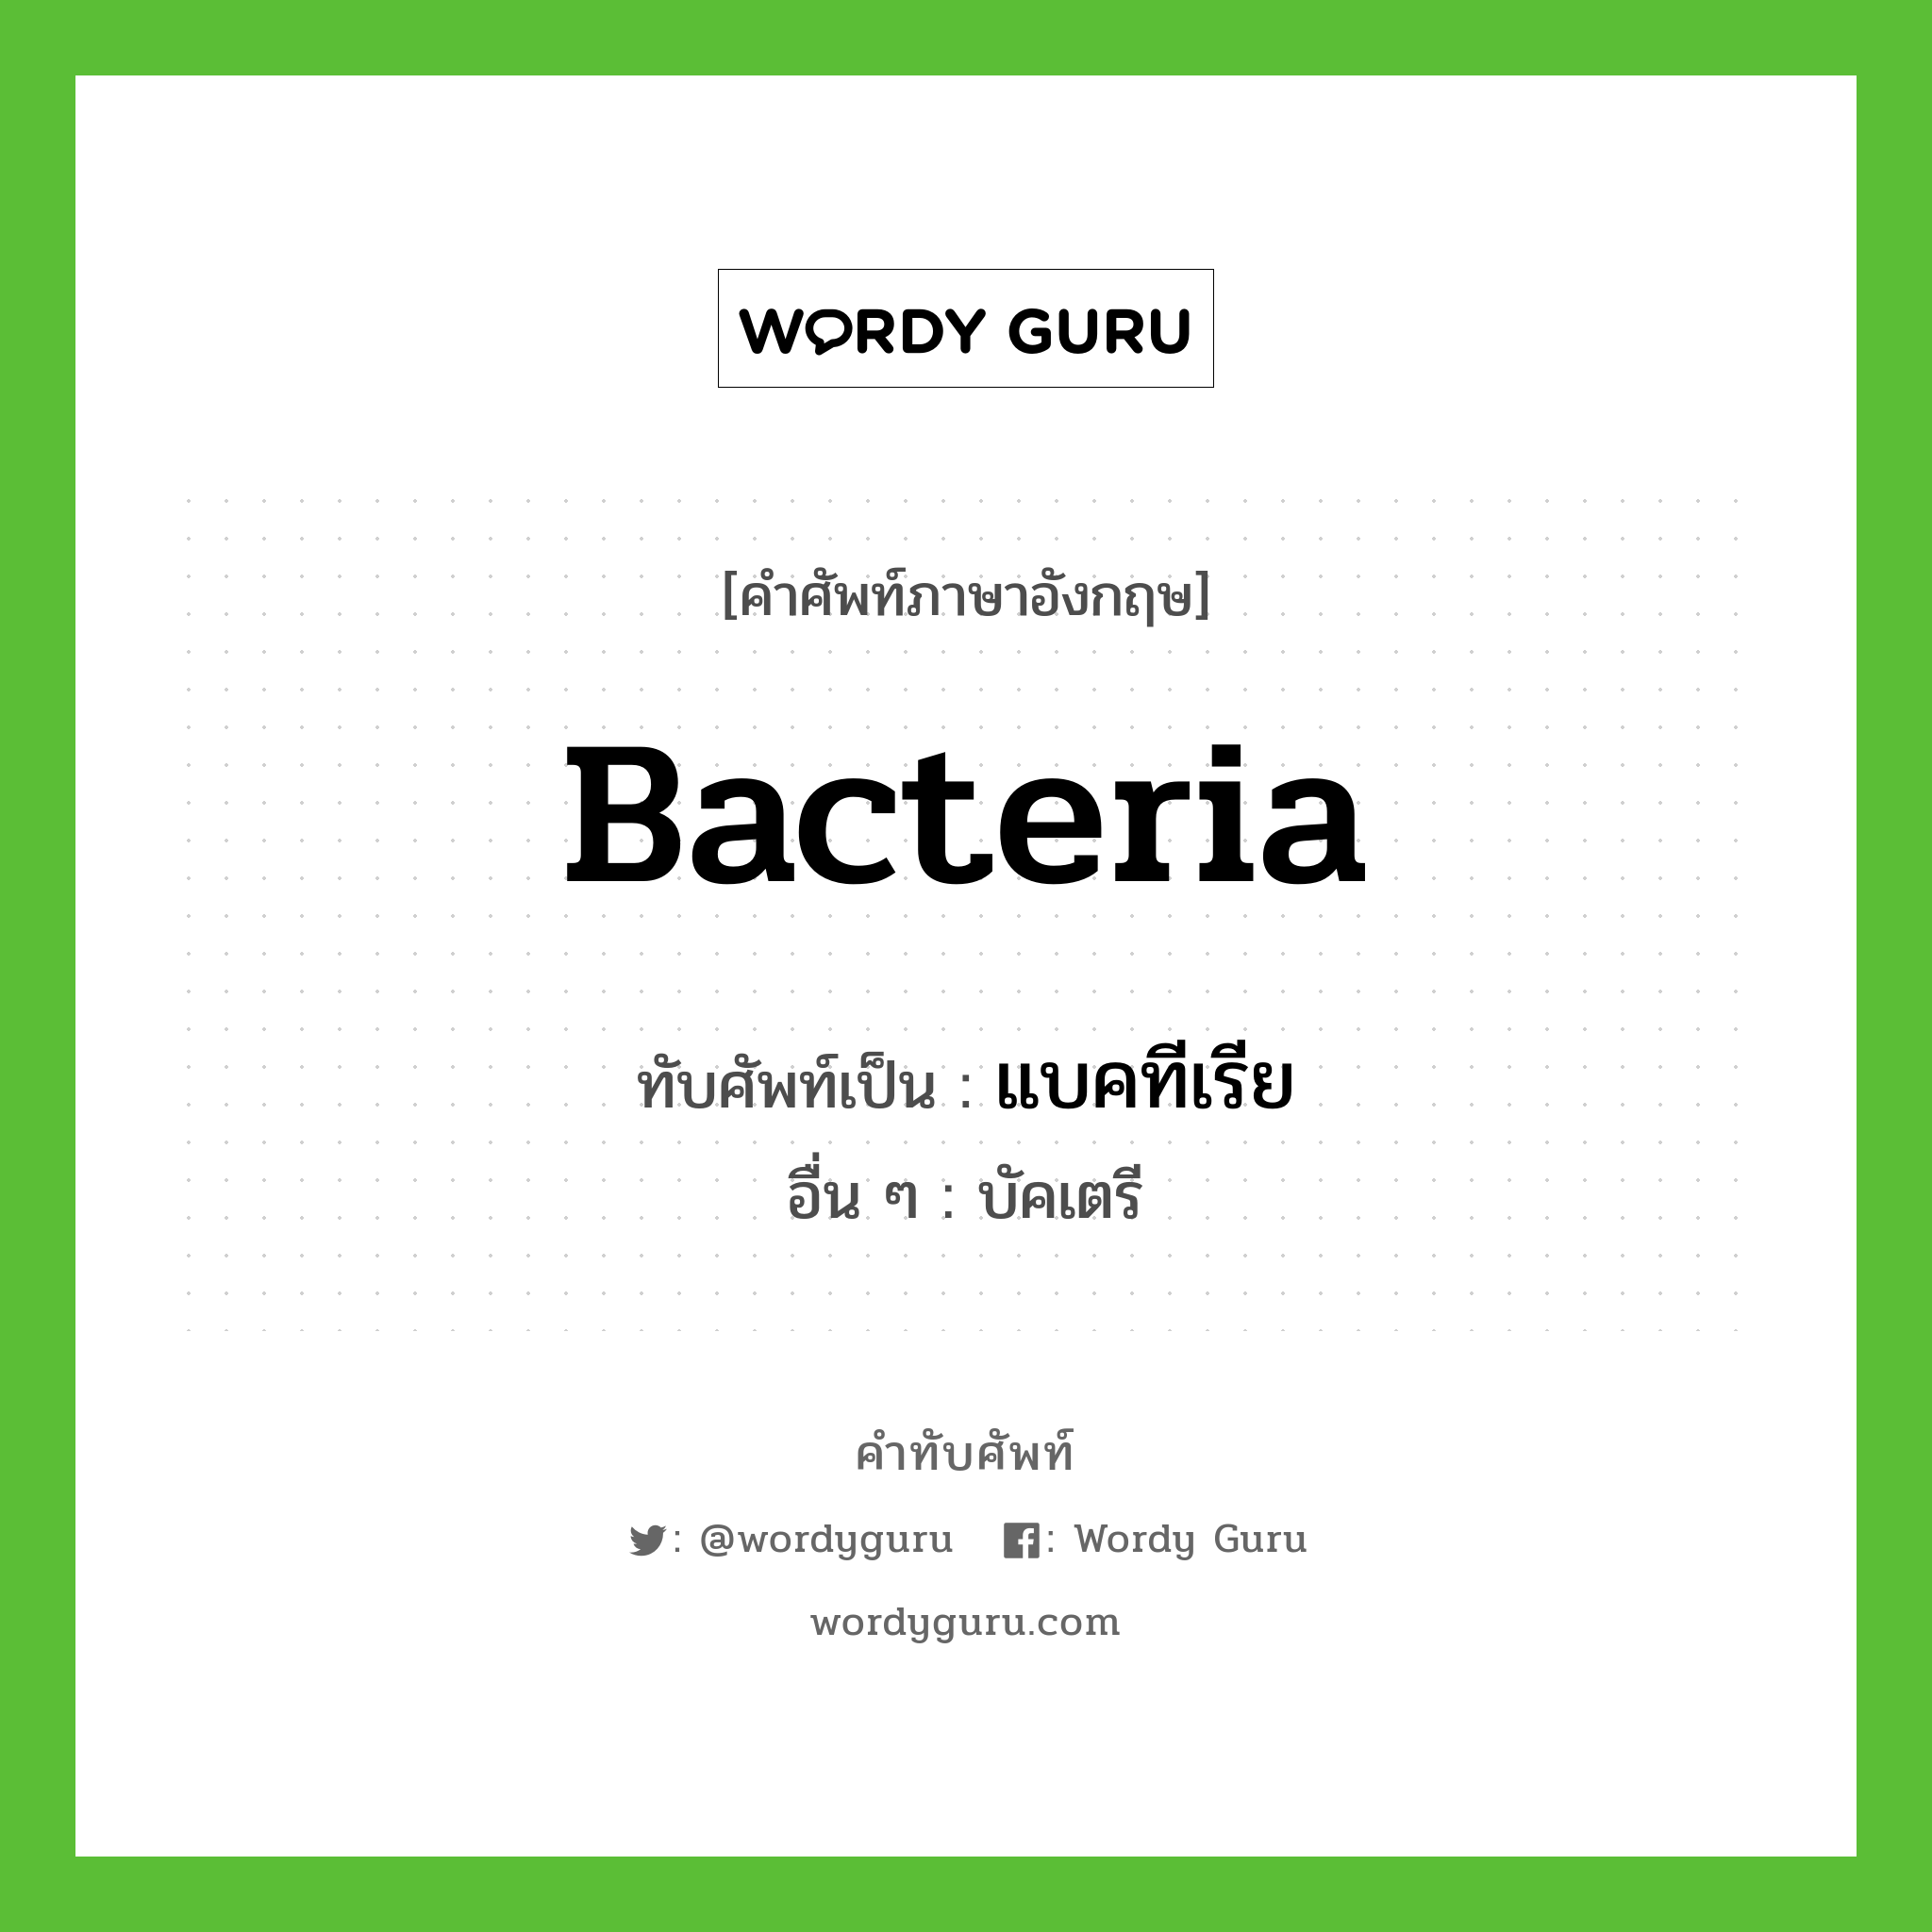 แบคทีเรีย เขียนอย่างไร?, คำศัพท์ภาษาอังกฤษ แบคทีเรีย ทับศัพท์เป็น bacteria อื่น ๆ บัคเตรี